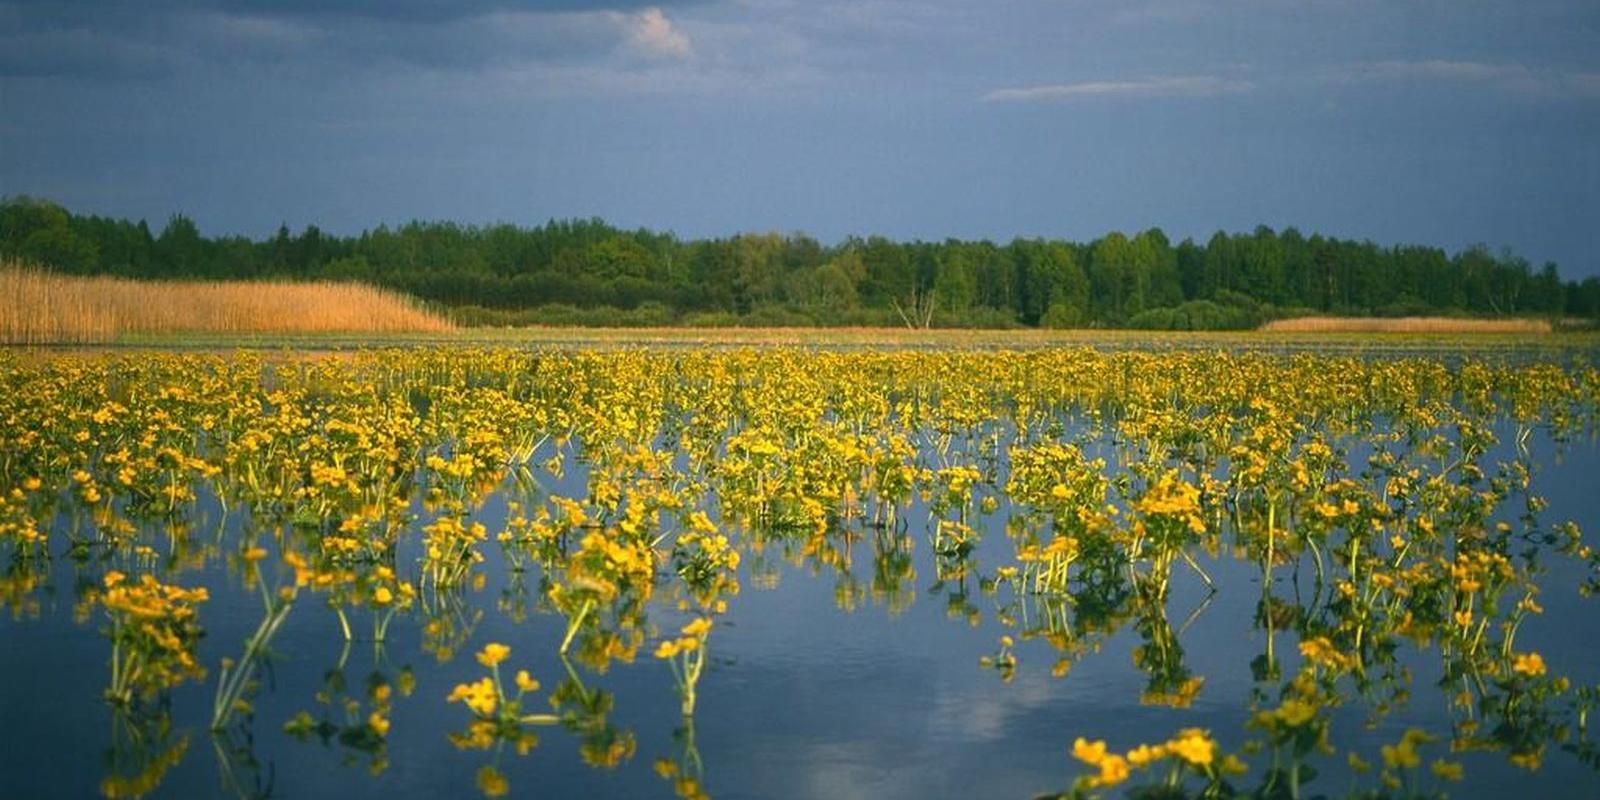 Naturschutzgebiet Alam-Pedja, das im Jahr 1994 gegründet wurde, ist eines der größten Schutzgebiete in Estland und gehört zu den Natura 2000 Schutzgeb